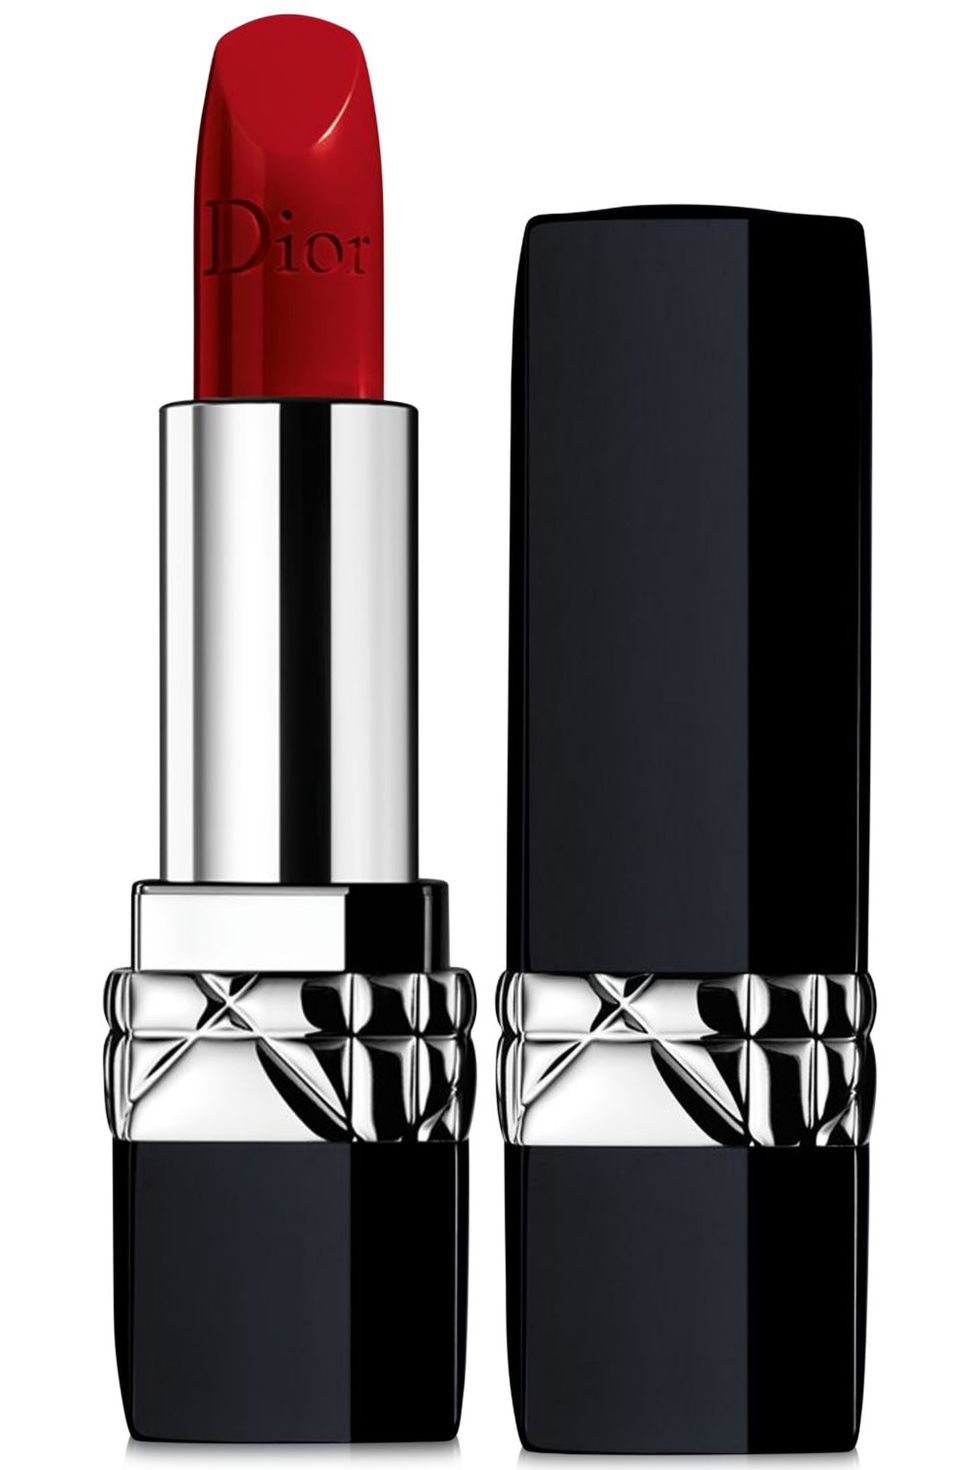 Derfor Vask vinduer køre 15 Best Red Lipstick Shades for 2022 - Iconic Red Lip Colors